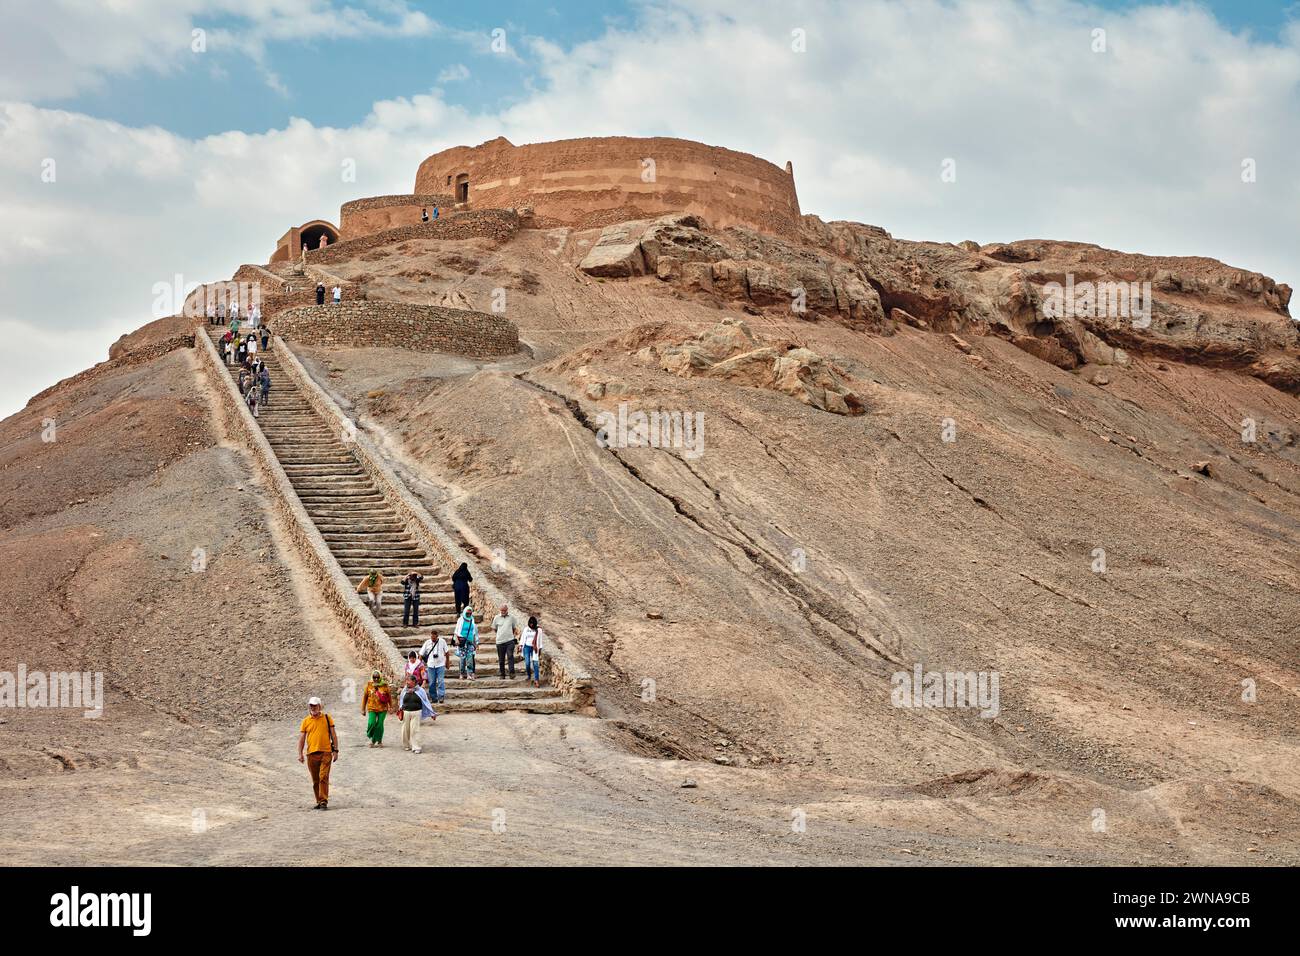 Les touristes descendent l'escalier après avoir visité la Tour du silence (Dakhmeh), une structure utilisée dans la tradition funéraire zoroastrienne. Yazd, Iran. Zoroastr Banque D'Images